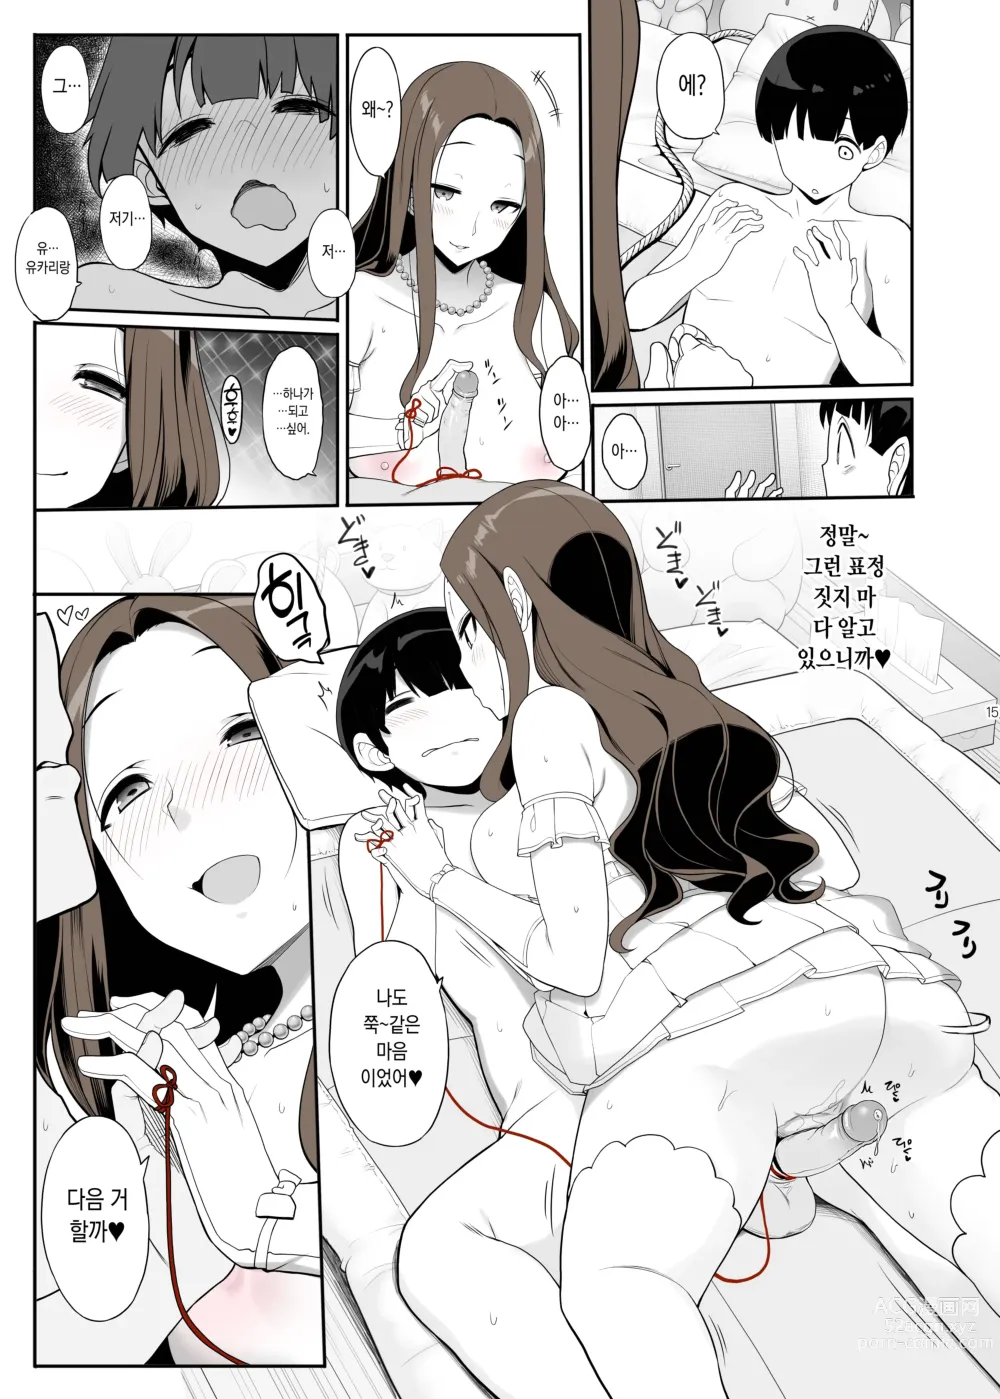 Page 15 of doujinshi 한결같은 누나랑 재회했더니 음란한 구혼을 받아 섹스 삼매경에 빠지는 이야기 (decensored)